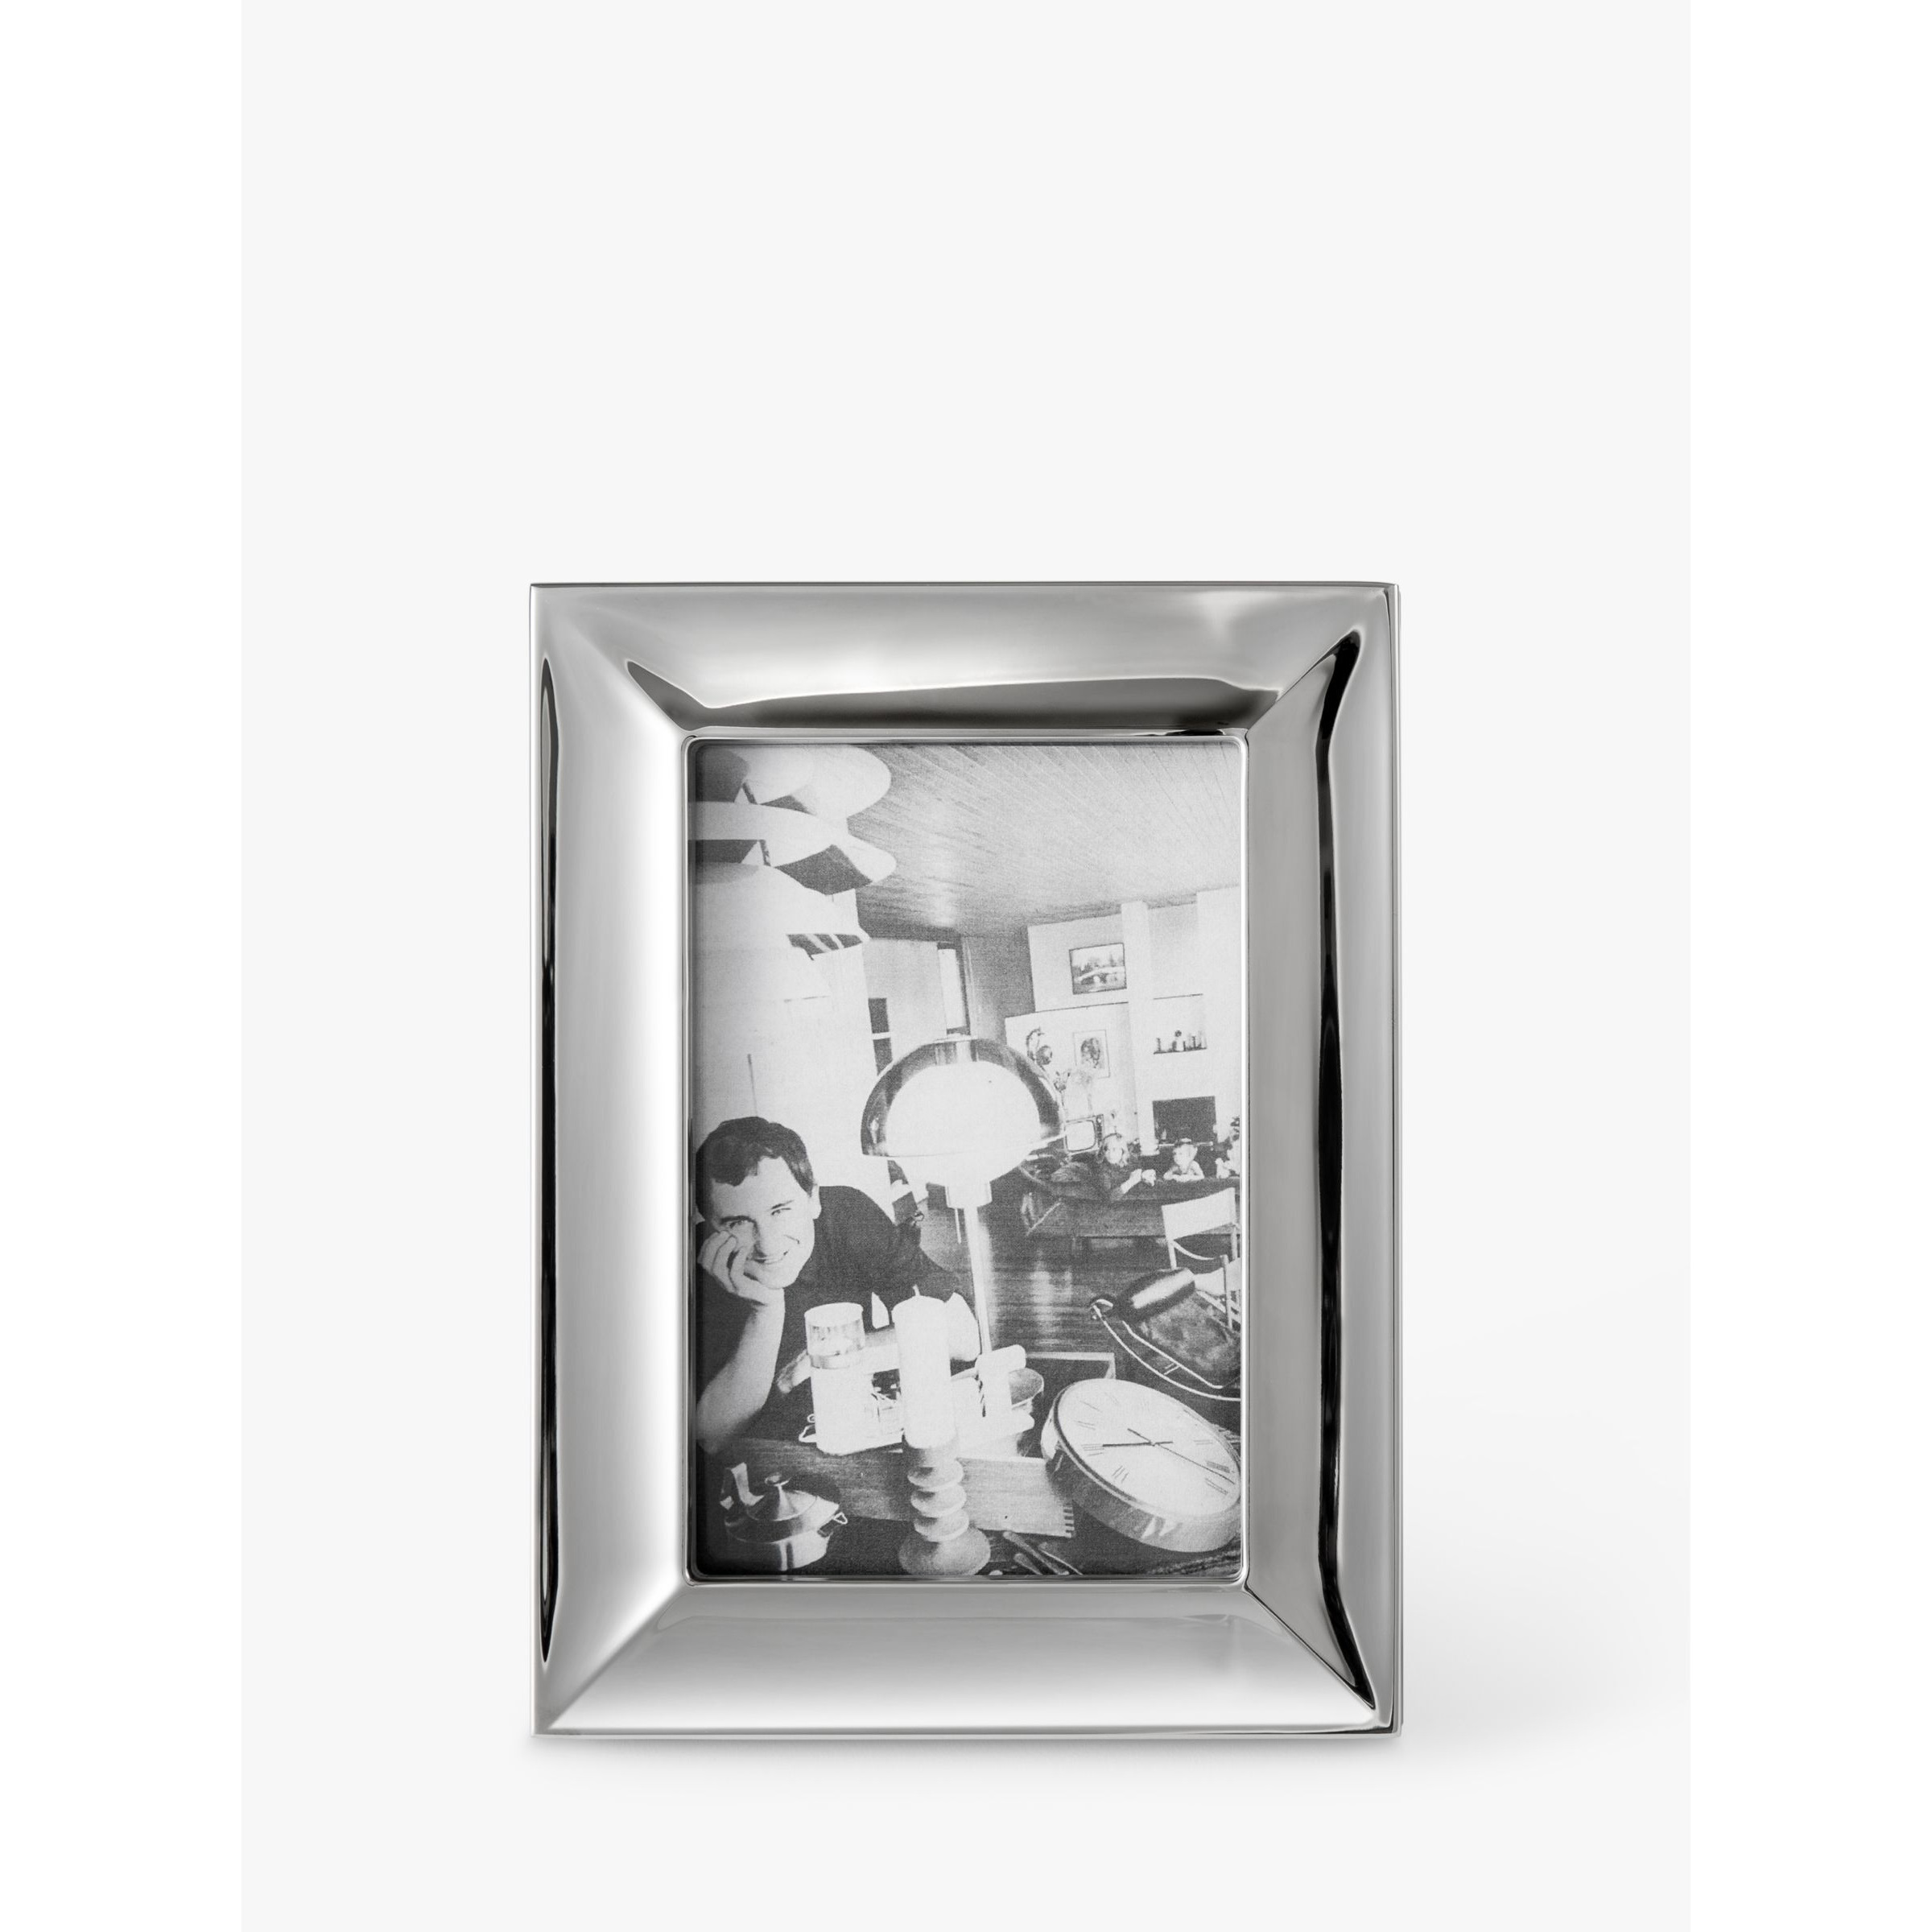 John Lewis Photo Frame & Mount, White, 4 x 6 (10 x 15cm)